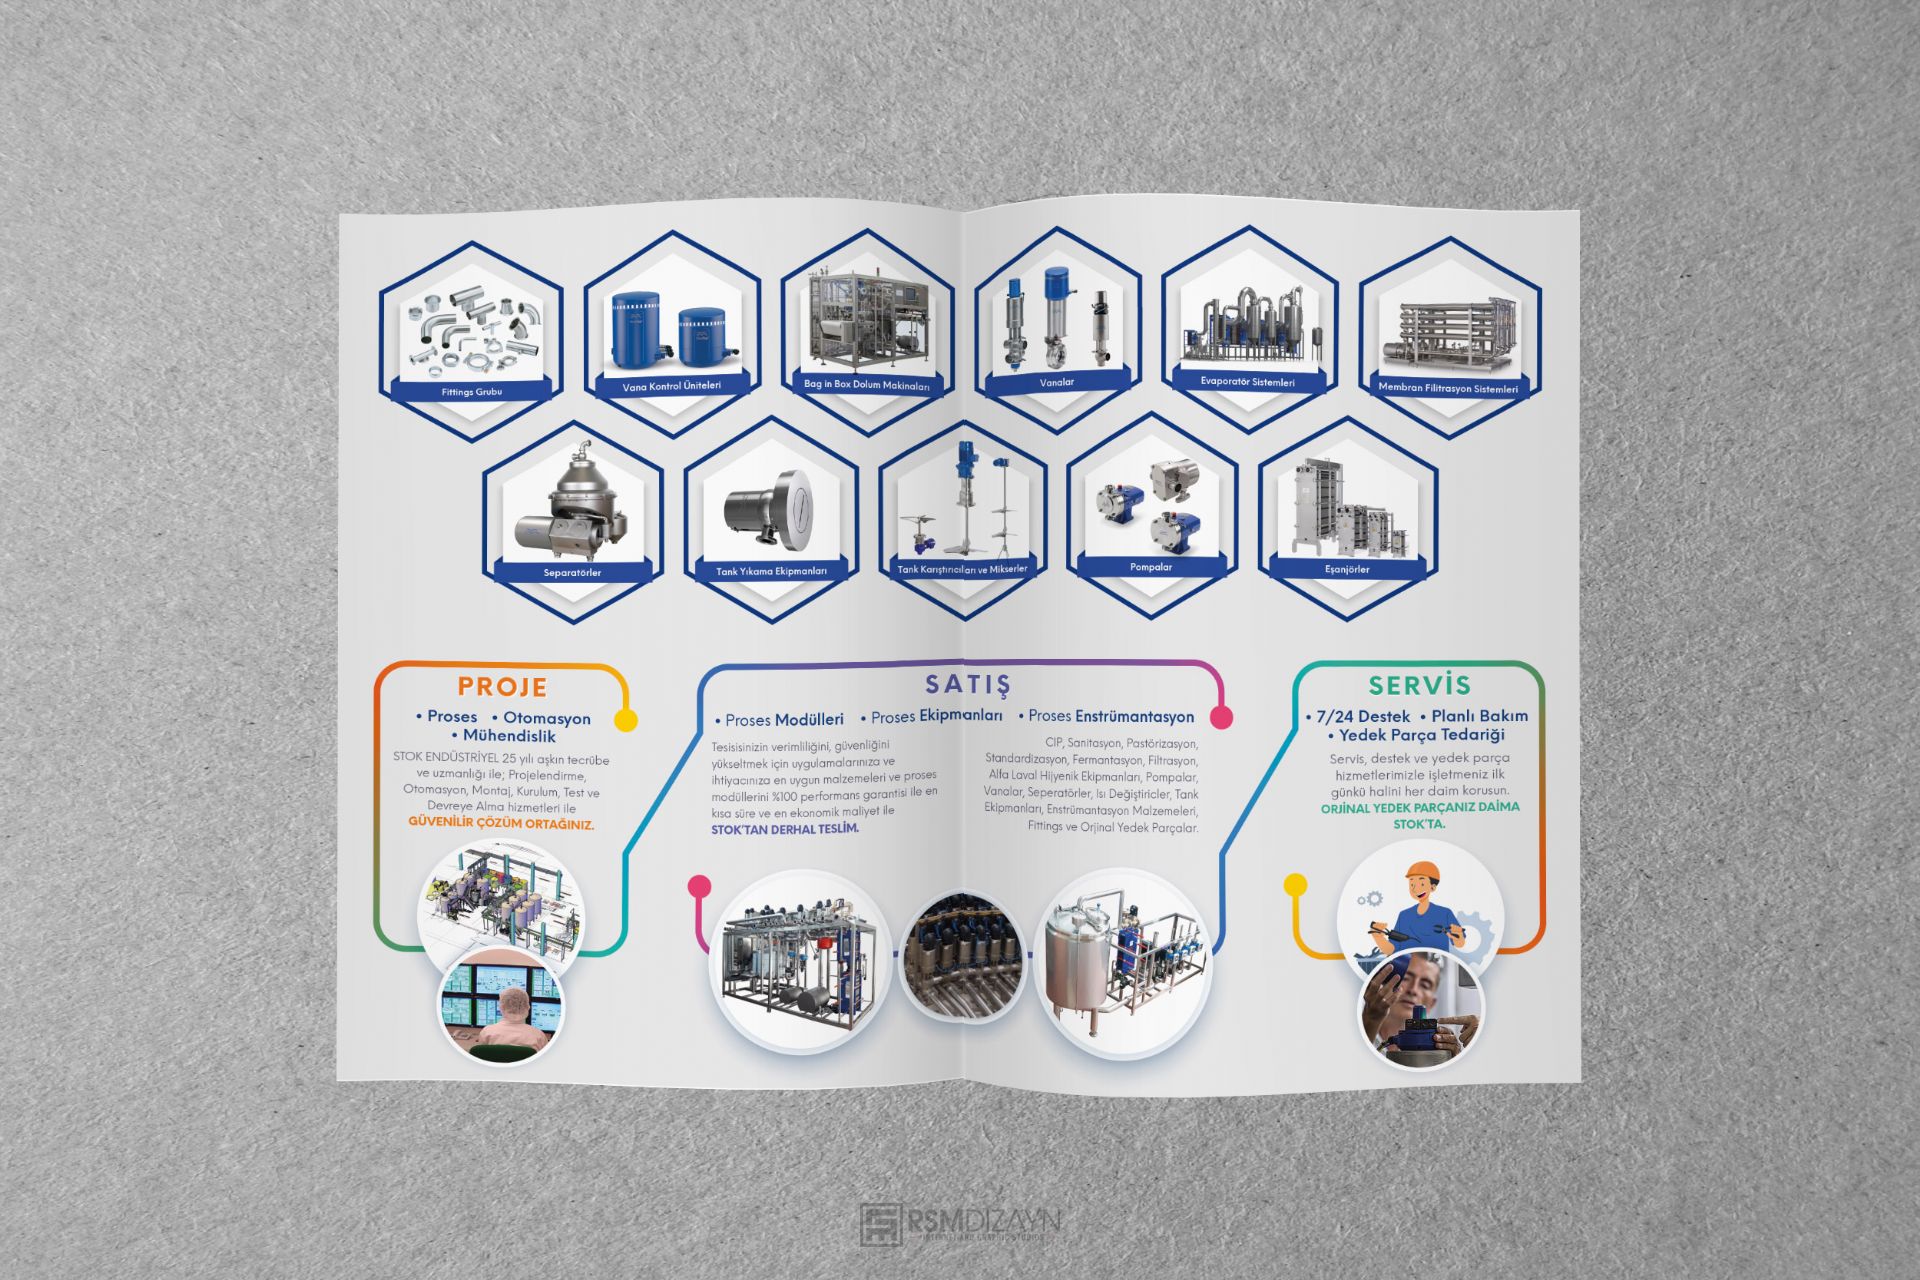 Stok Endüstriyel | Katalog Tasarım ve Baskı Uygulaması